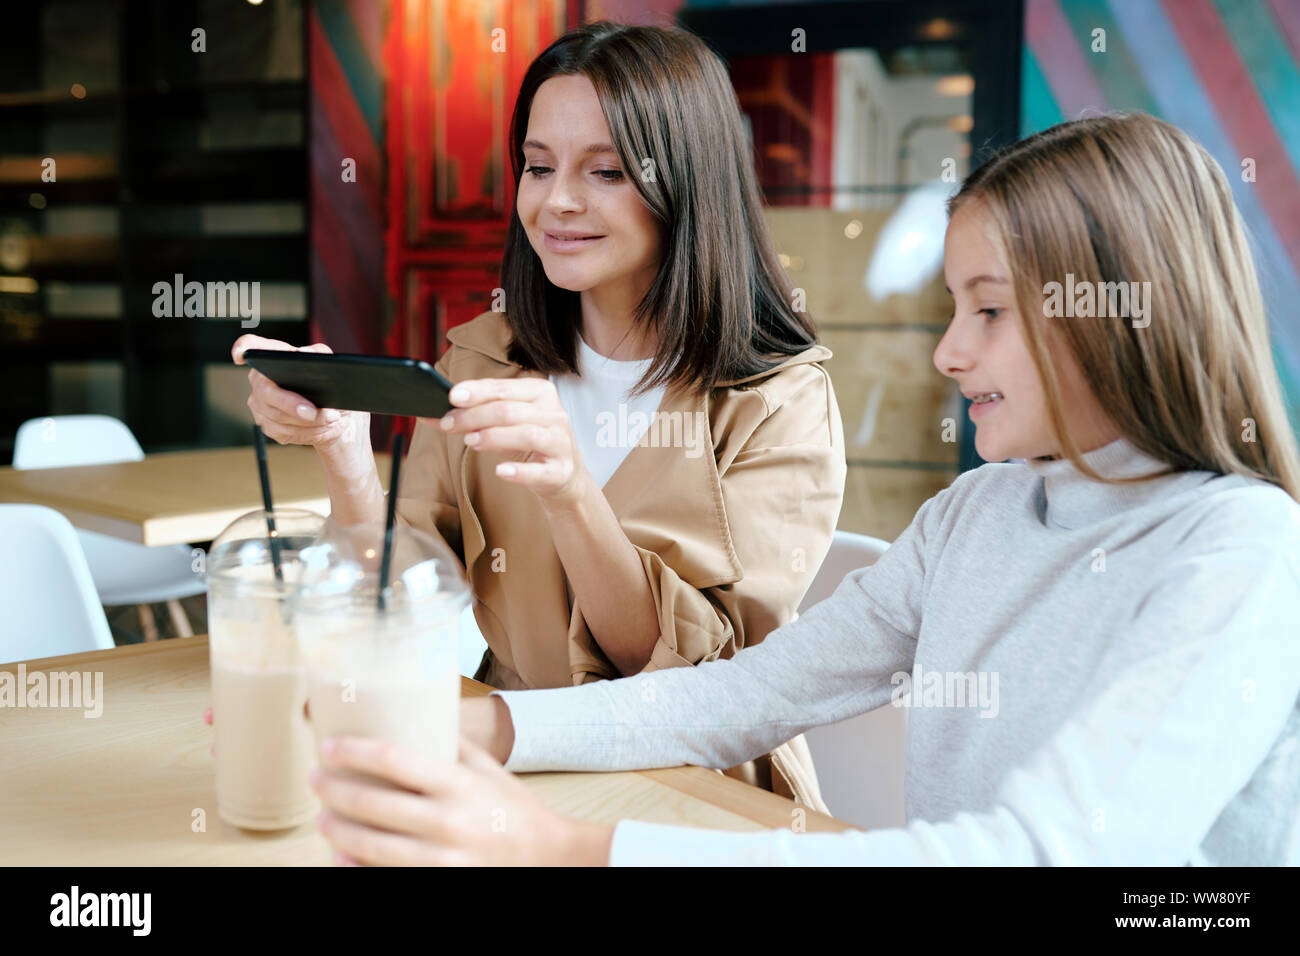 Hübsche junge brünette Frau mit Smartphone, Foto von zwei Milch cocktails Stockfoto